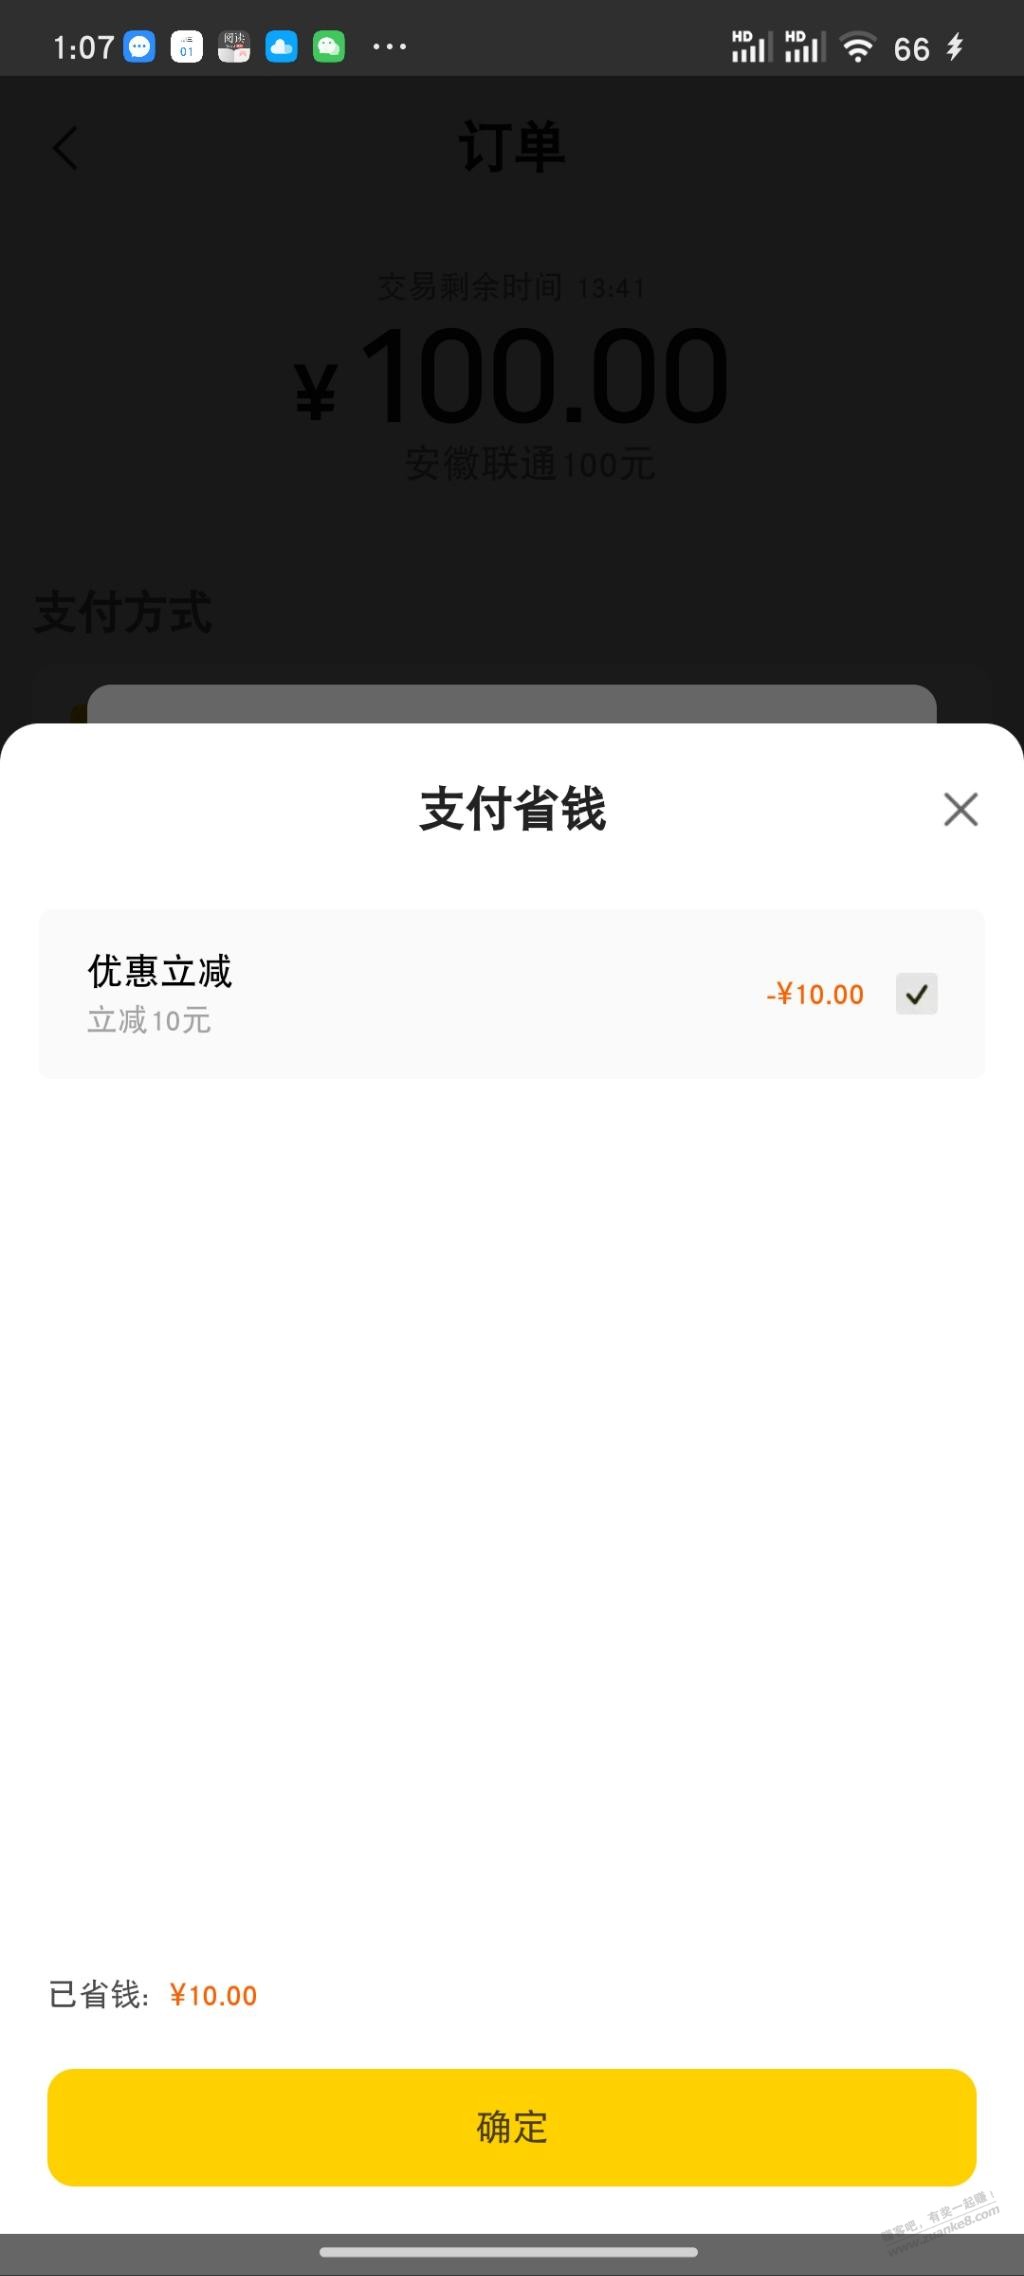 美团话费工商储蓄卡100-10-惠小助(52huixz.com)